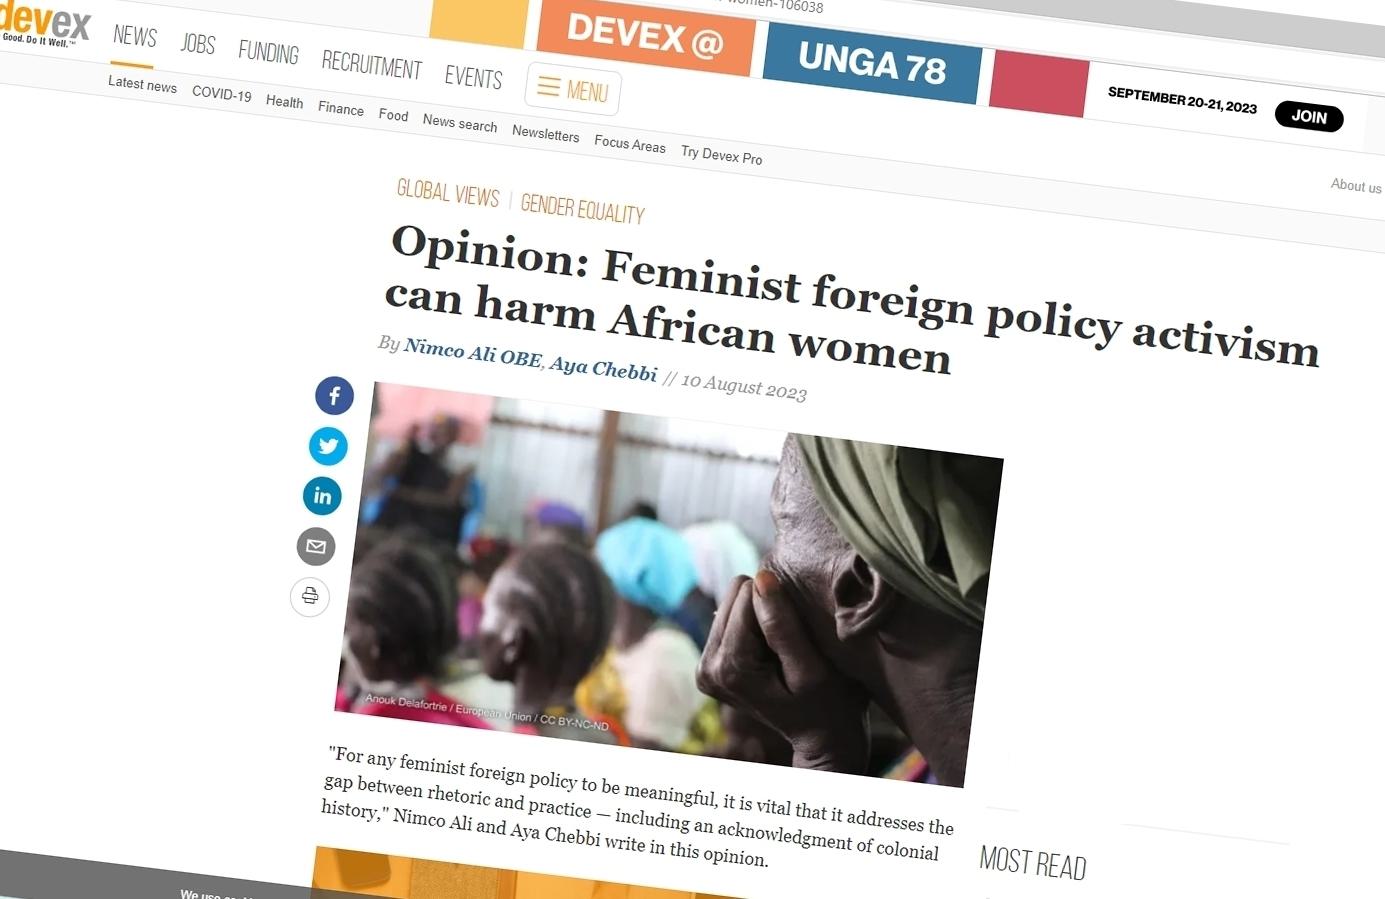 ‘Feministisch’ abortusbeleid schaadt Afrikaanse vrouwen